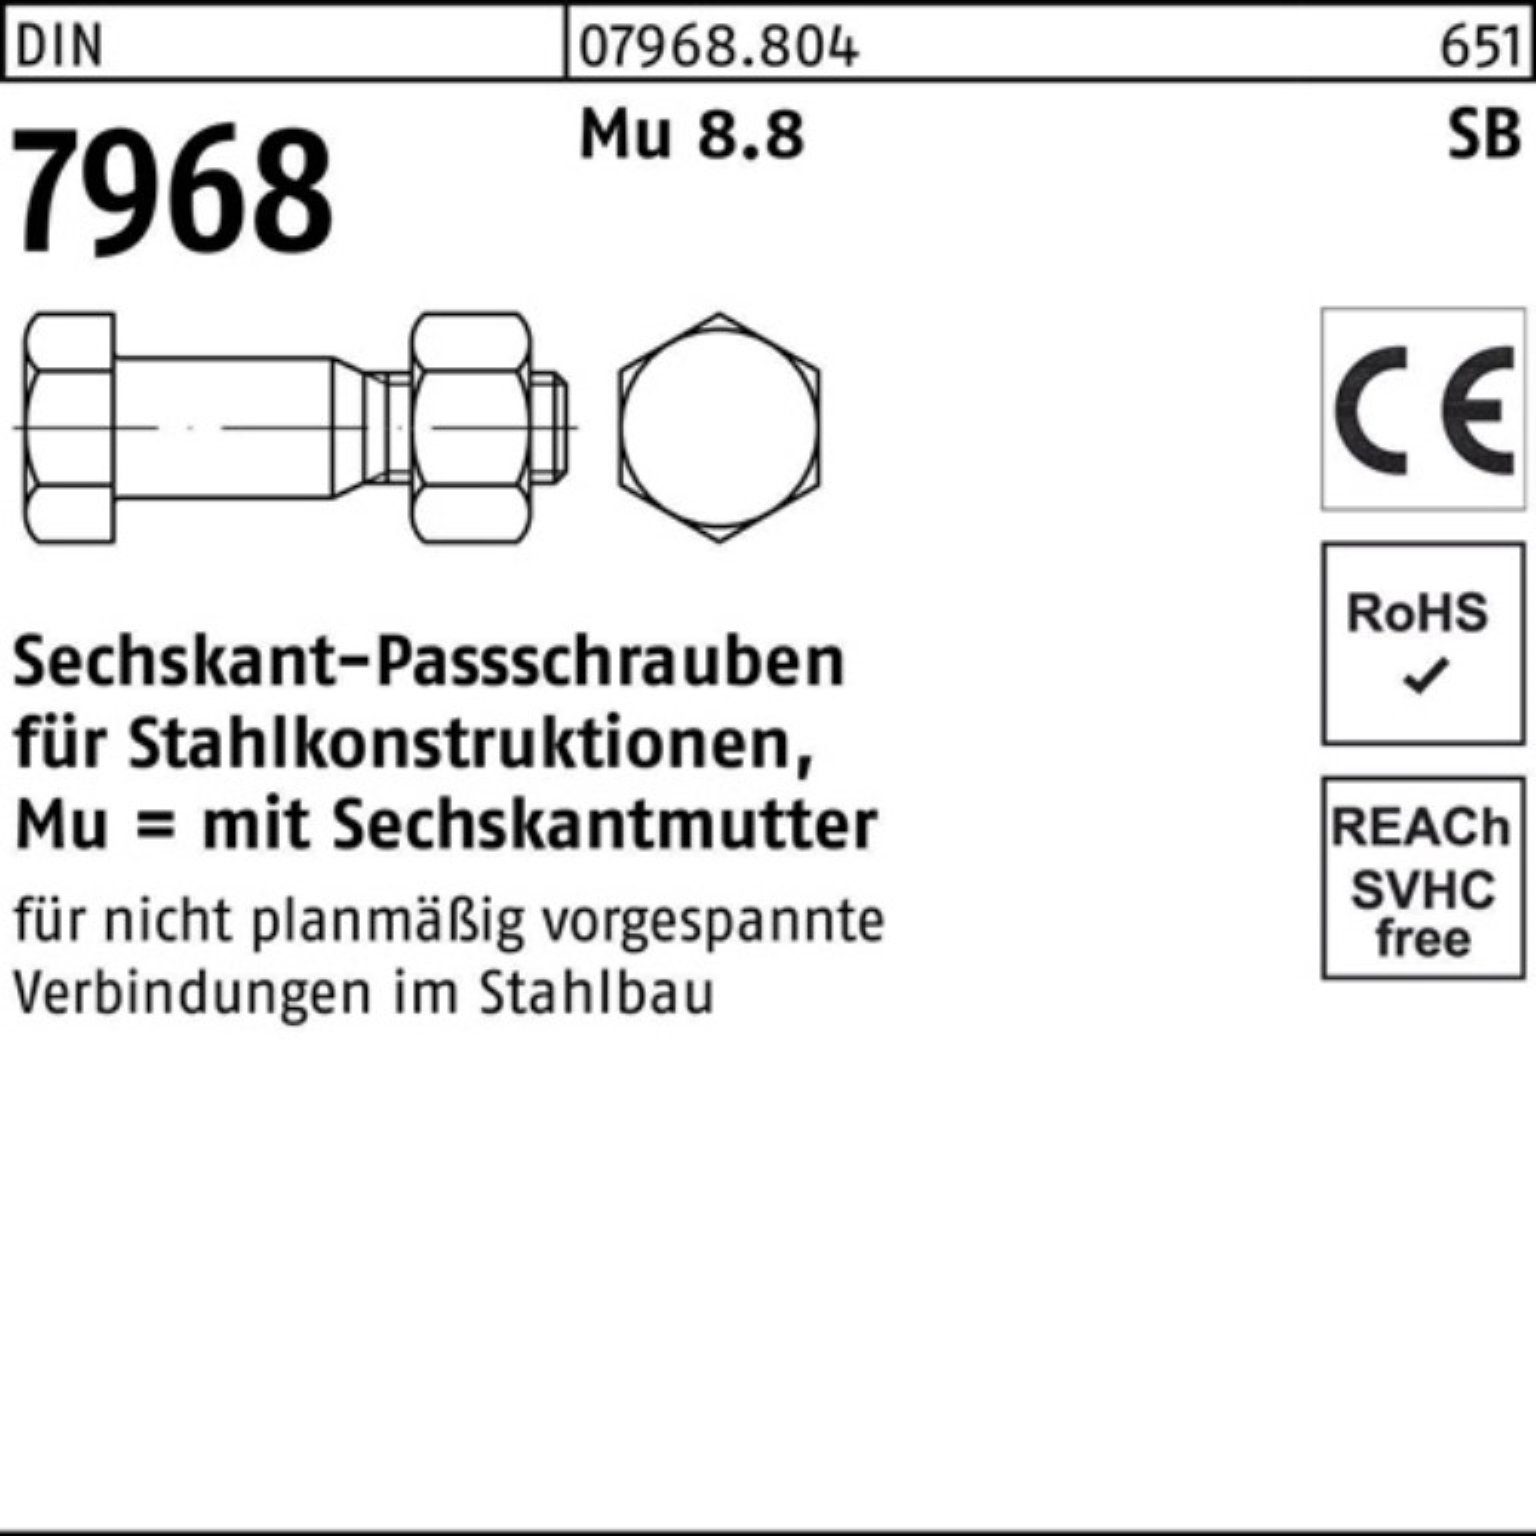 8.8 Schraube Sechskantpassschraube M20x 7968 90 100er DIN Stück Mutter Pack 1 Reyher